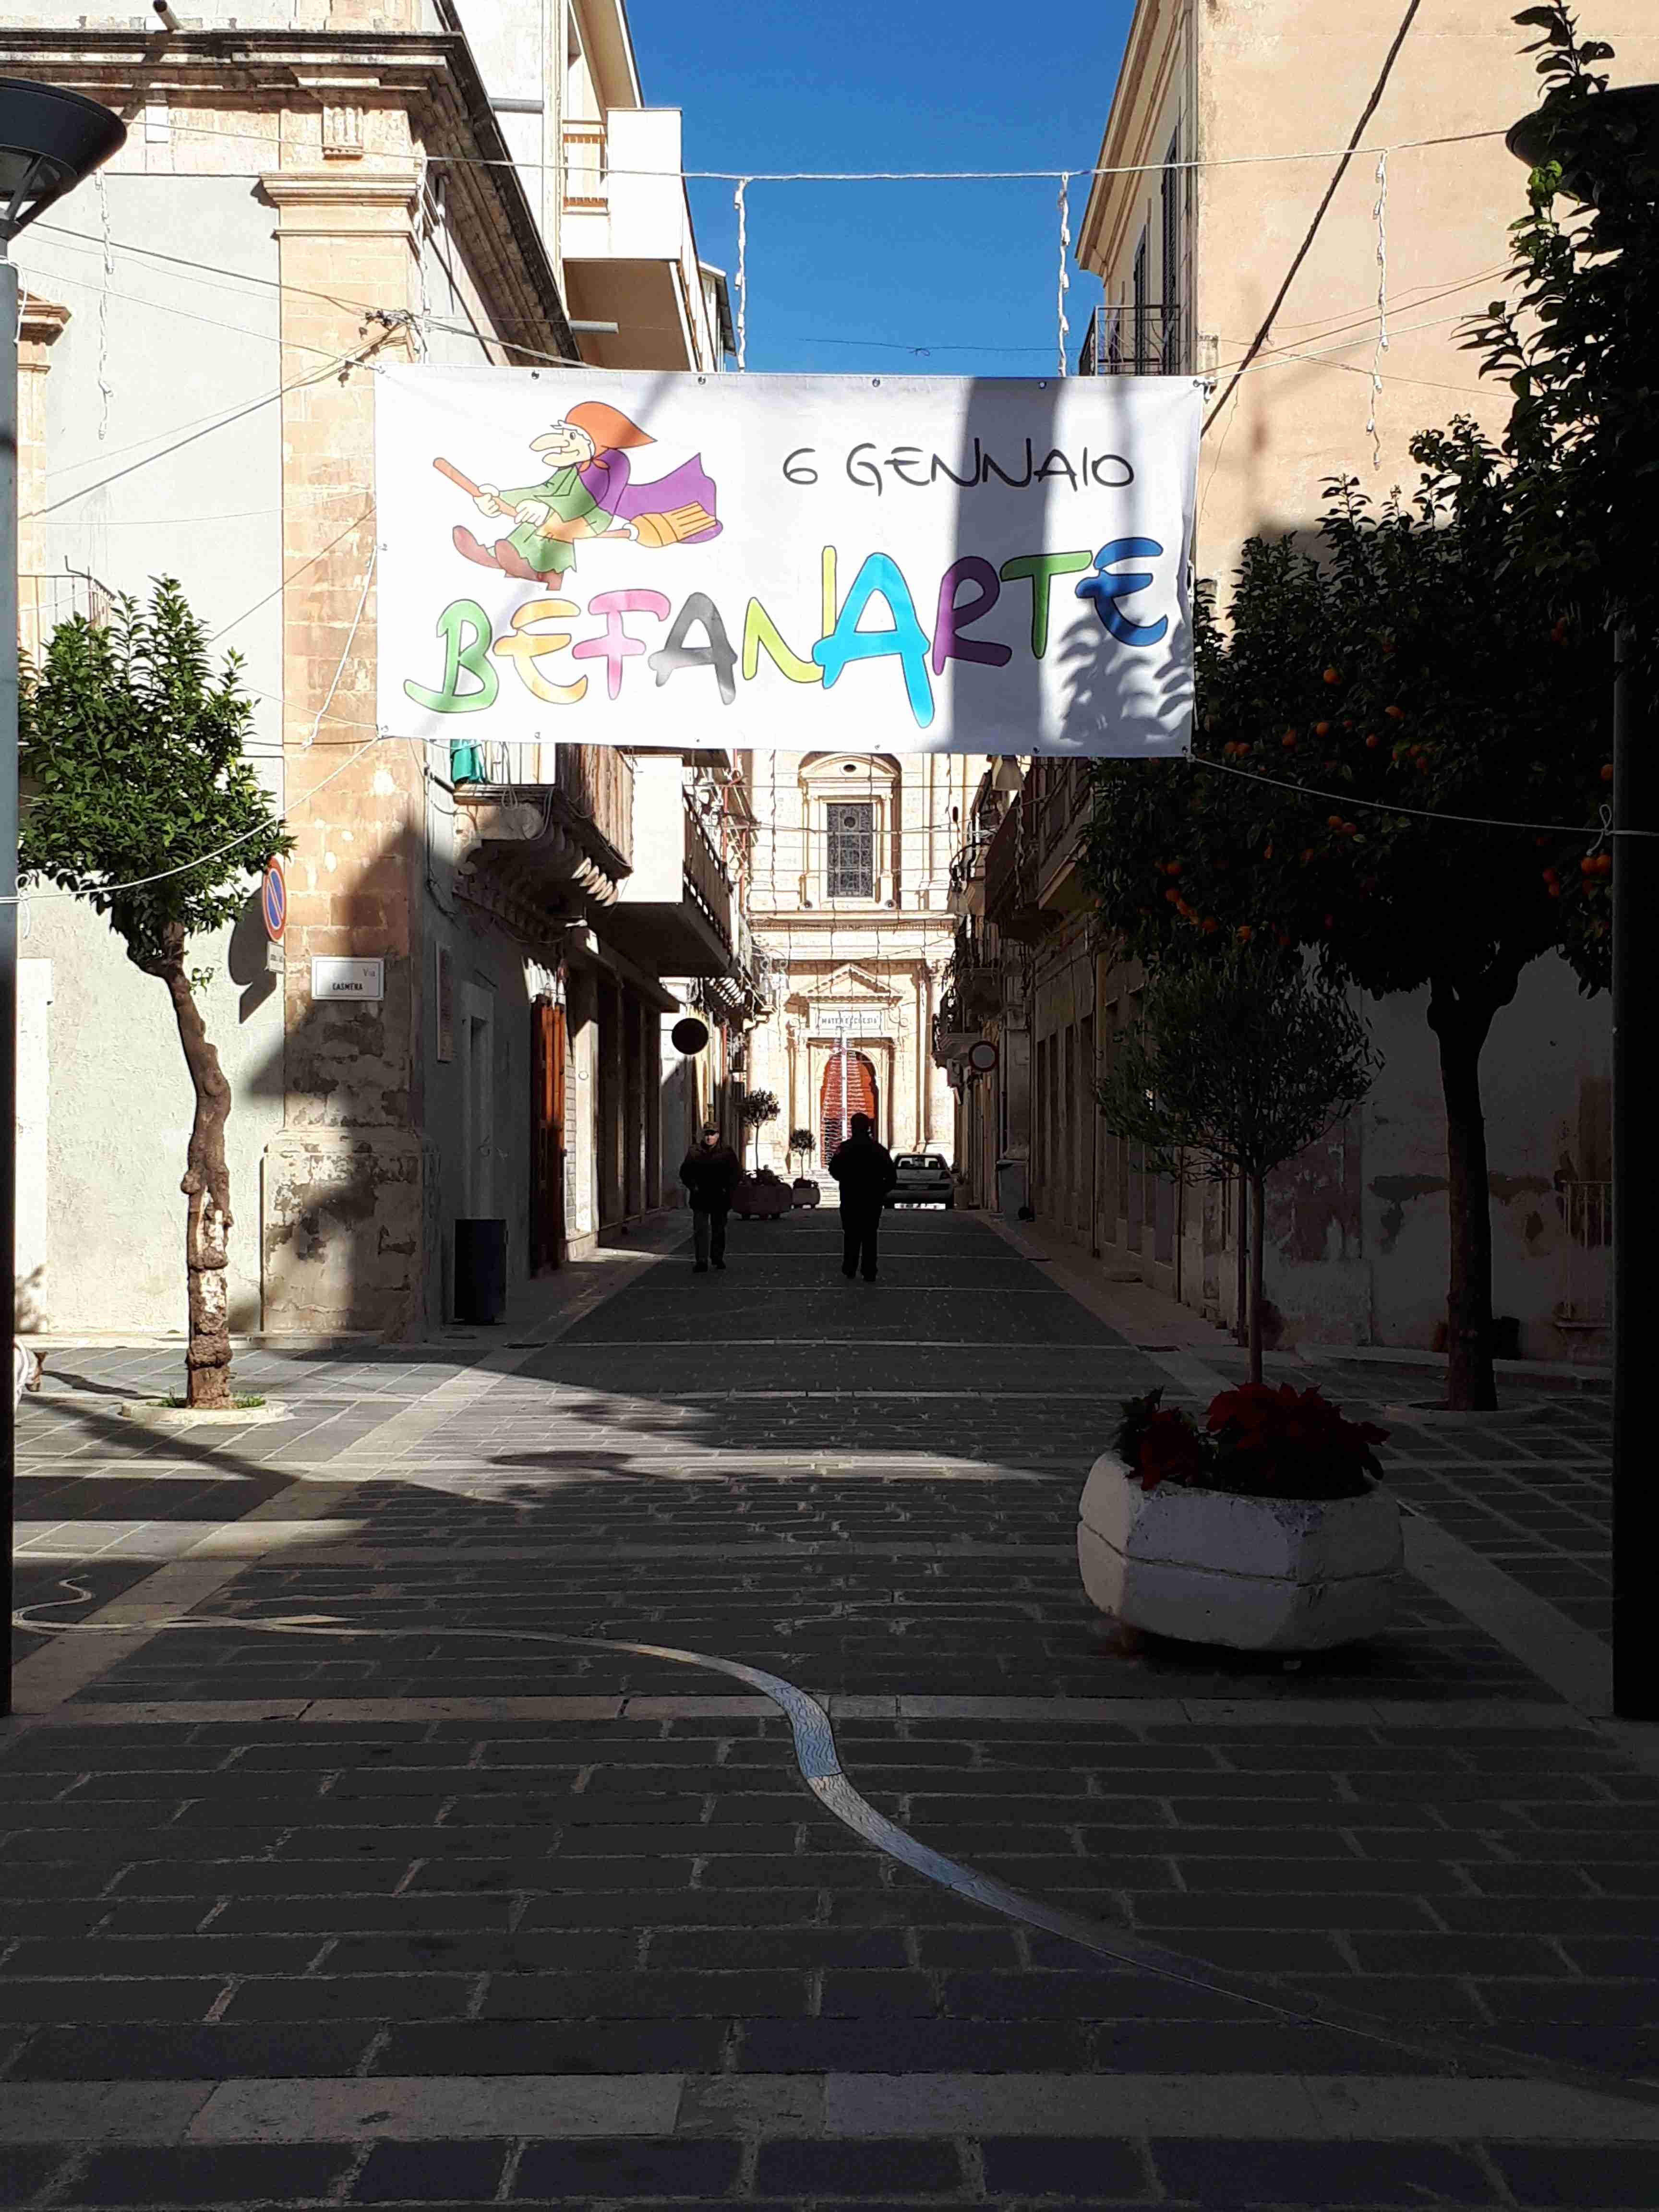 Il 6 gennaio in piazza Faustino Maltese appuntamento con BefanArte